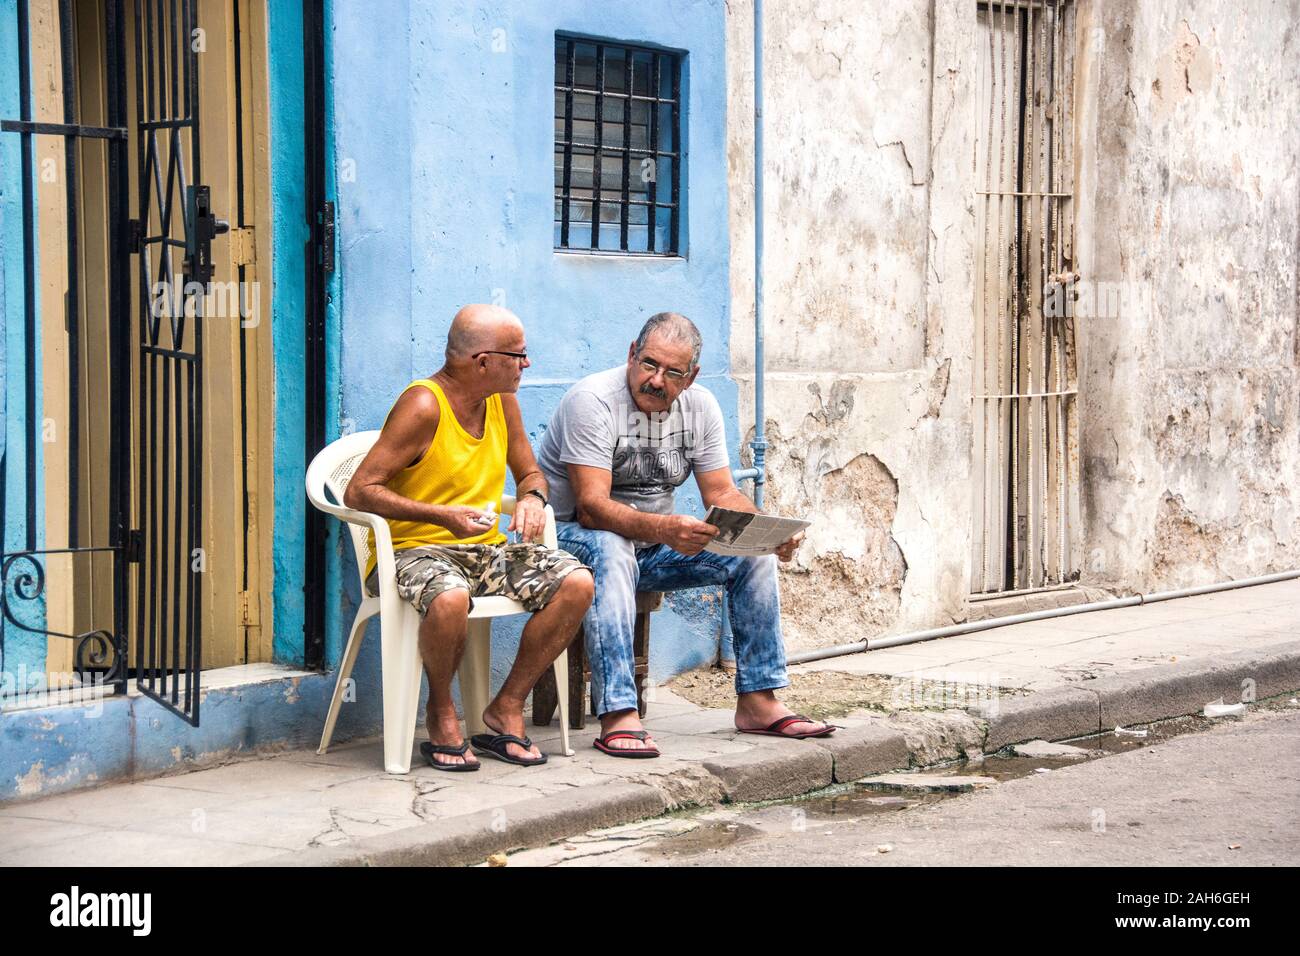 Bürger von Havanna Serie - Zwei Nachbarn reden außerhalb ihrer Häuser. Stockfoto